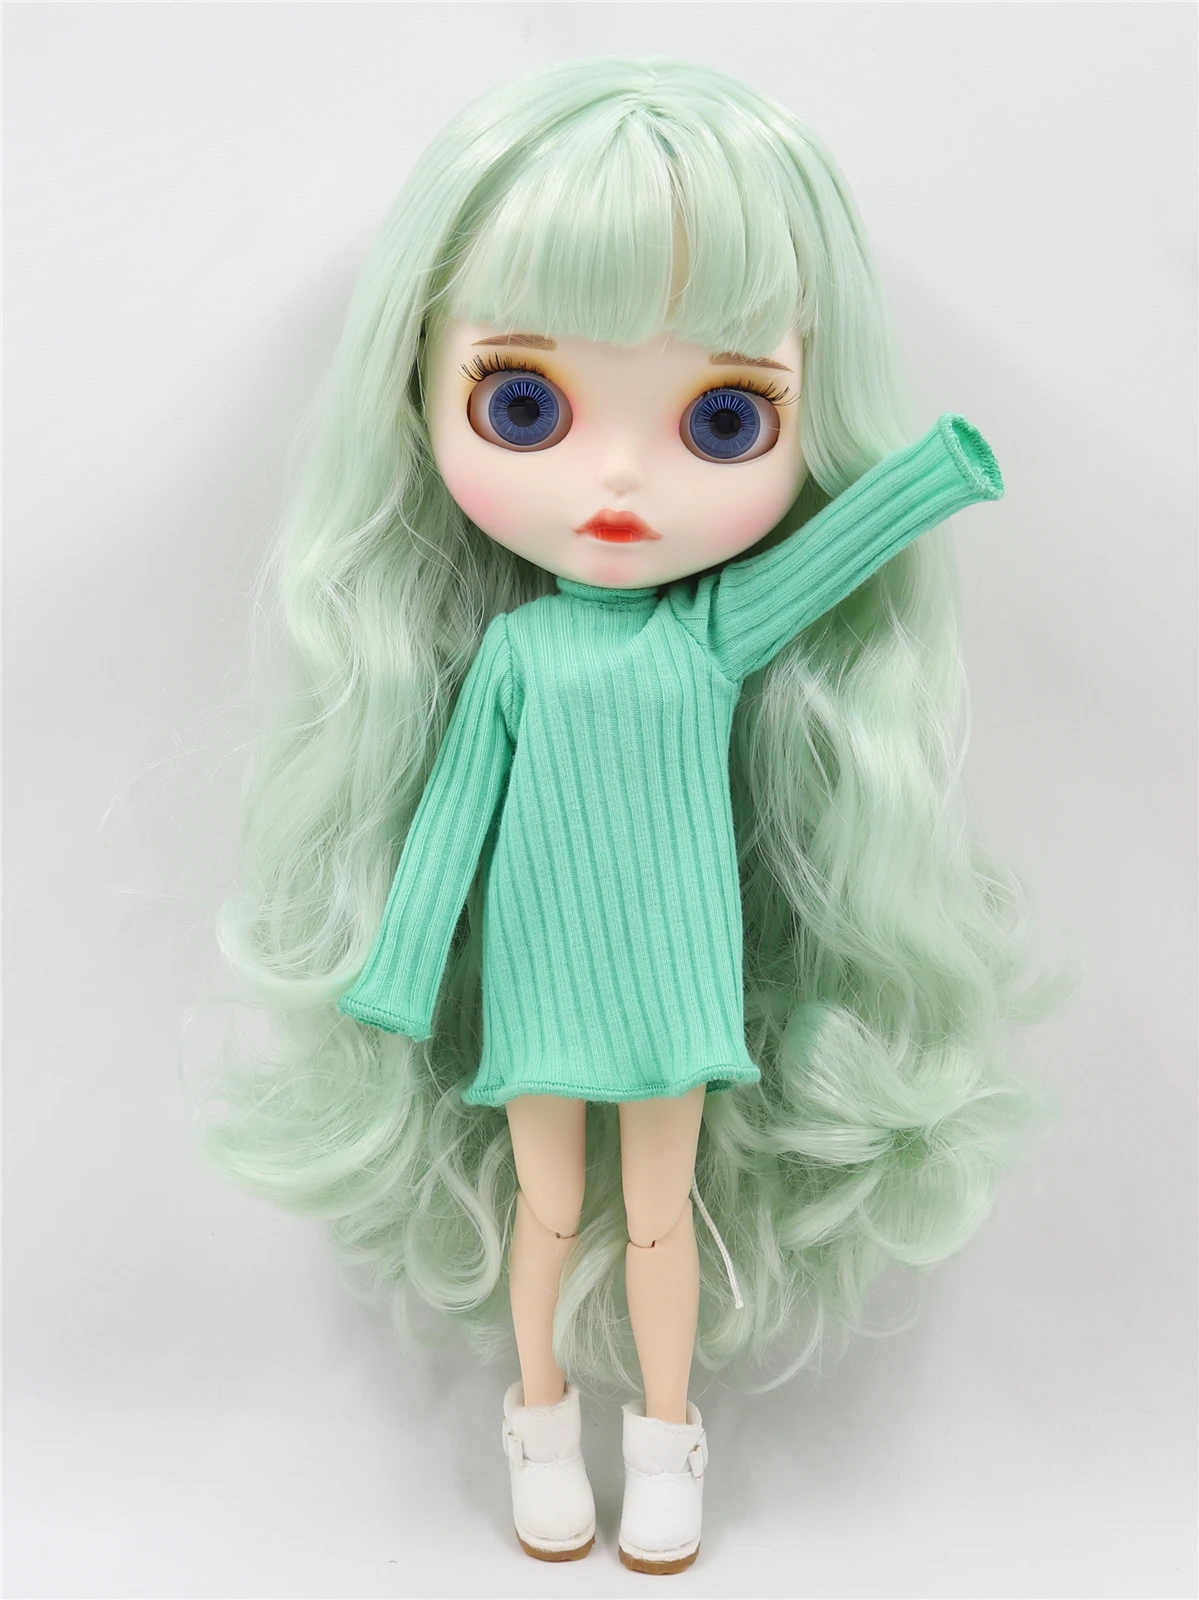 Zaylee - Premium Custom Neo Blythe Boneca com cabelo verde, pele branca e rosto fofo fosco 1